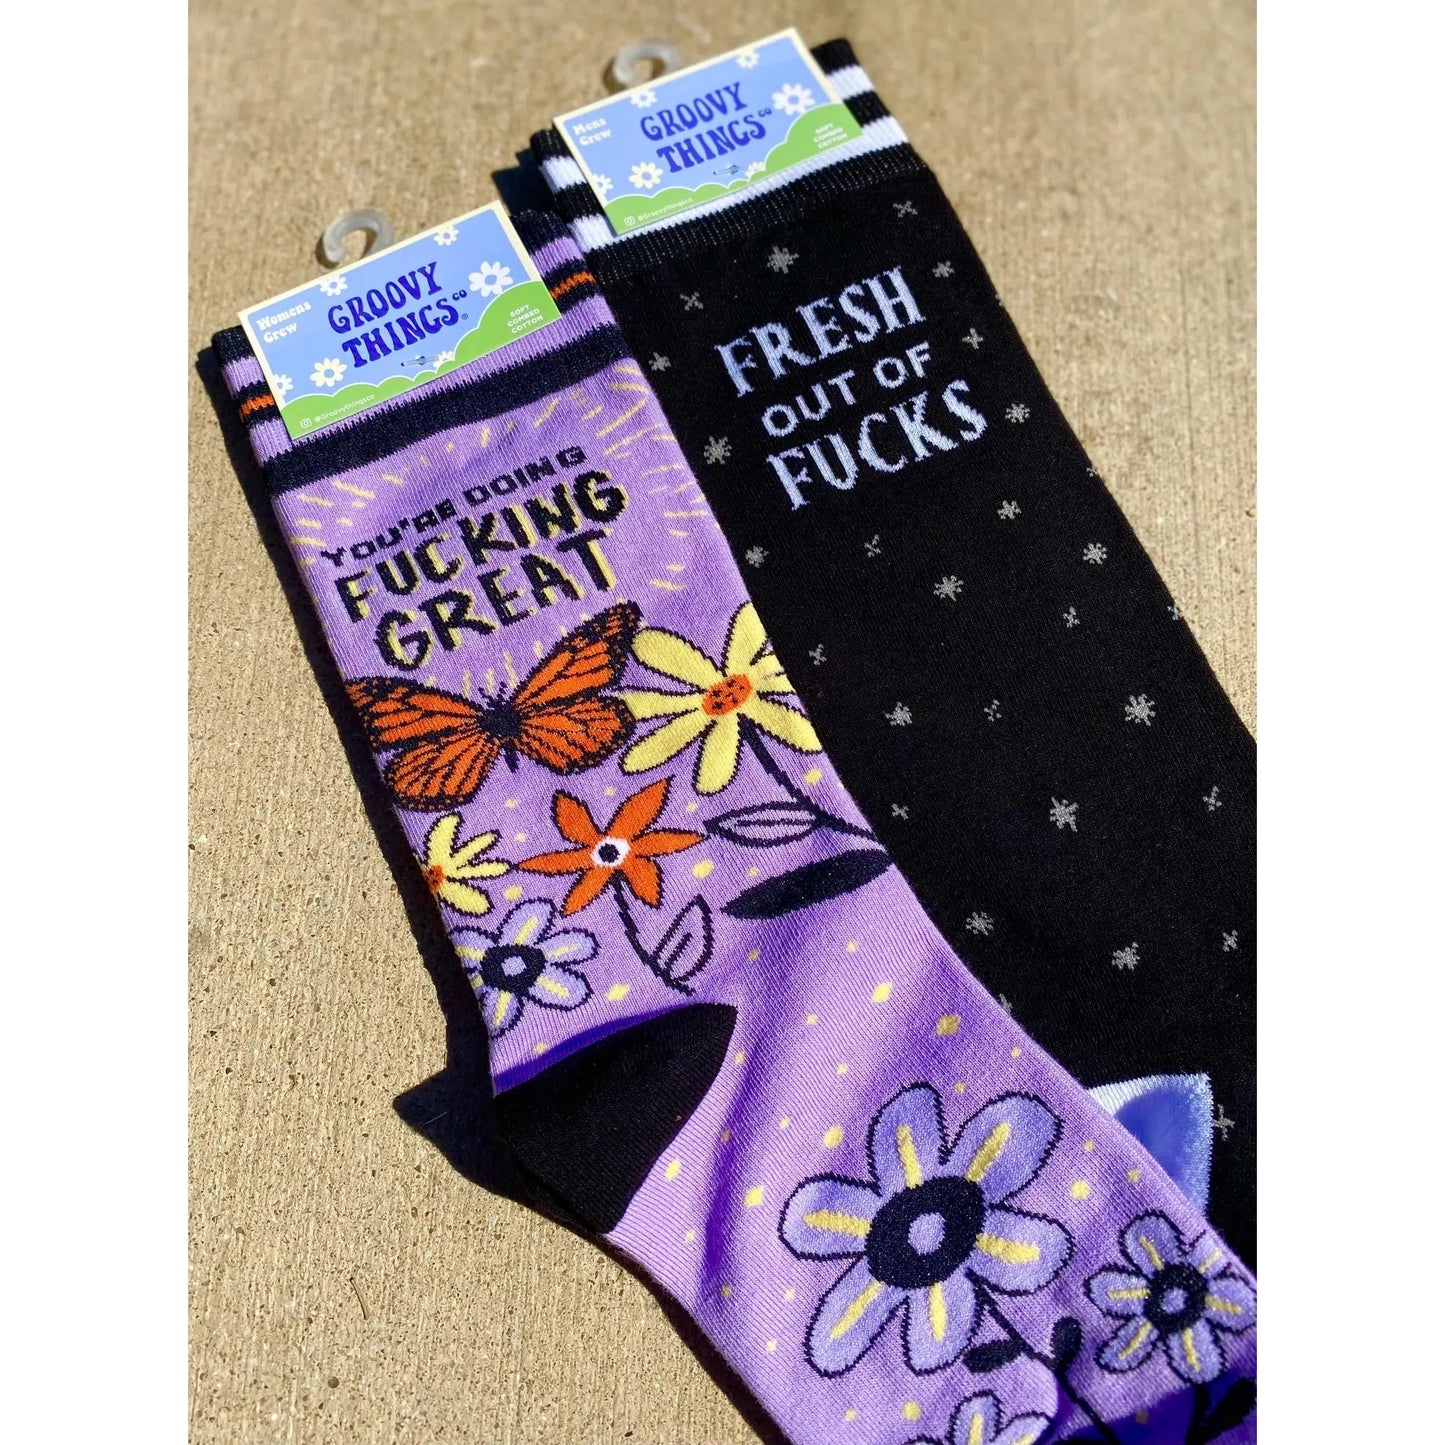 You're Doing Fucking Great Women's Socks in Purple Butterly